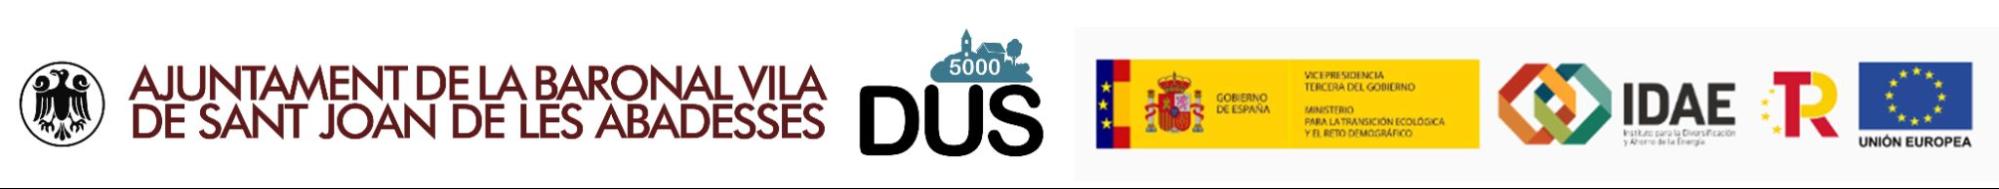 LOGOS DUS 5000